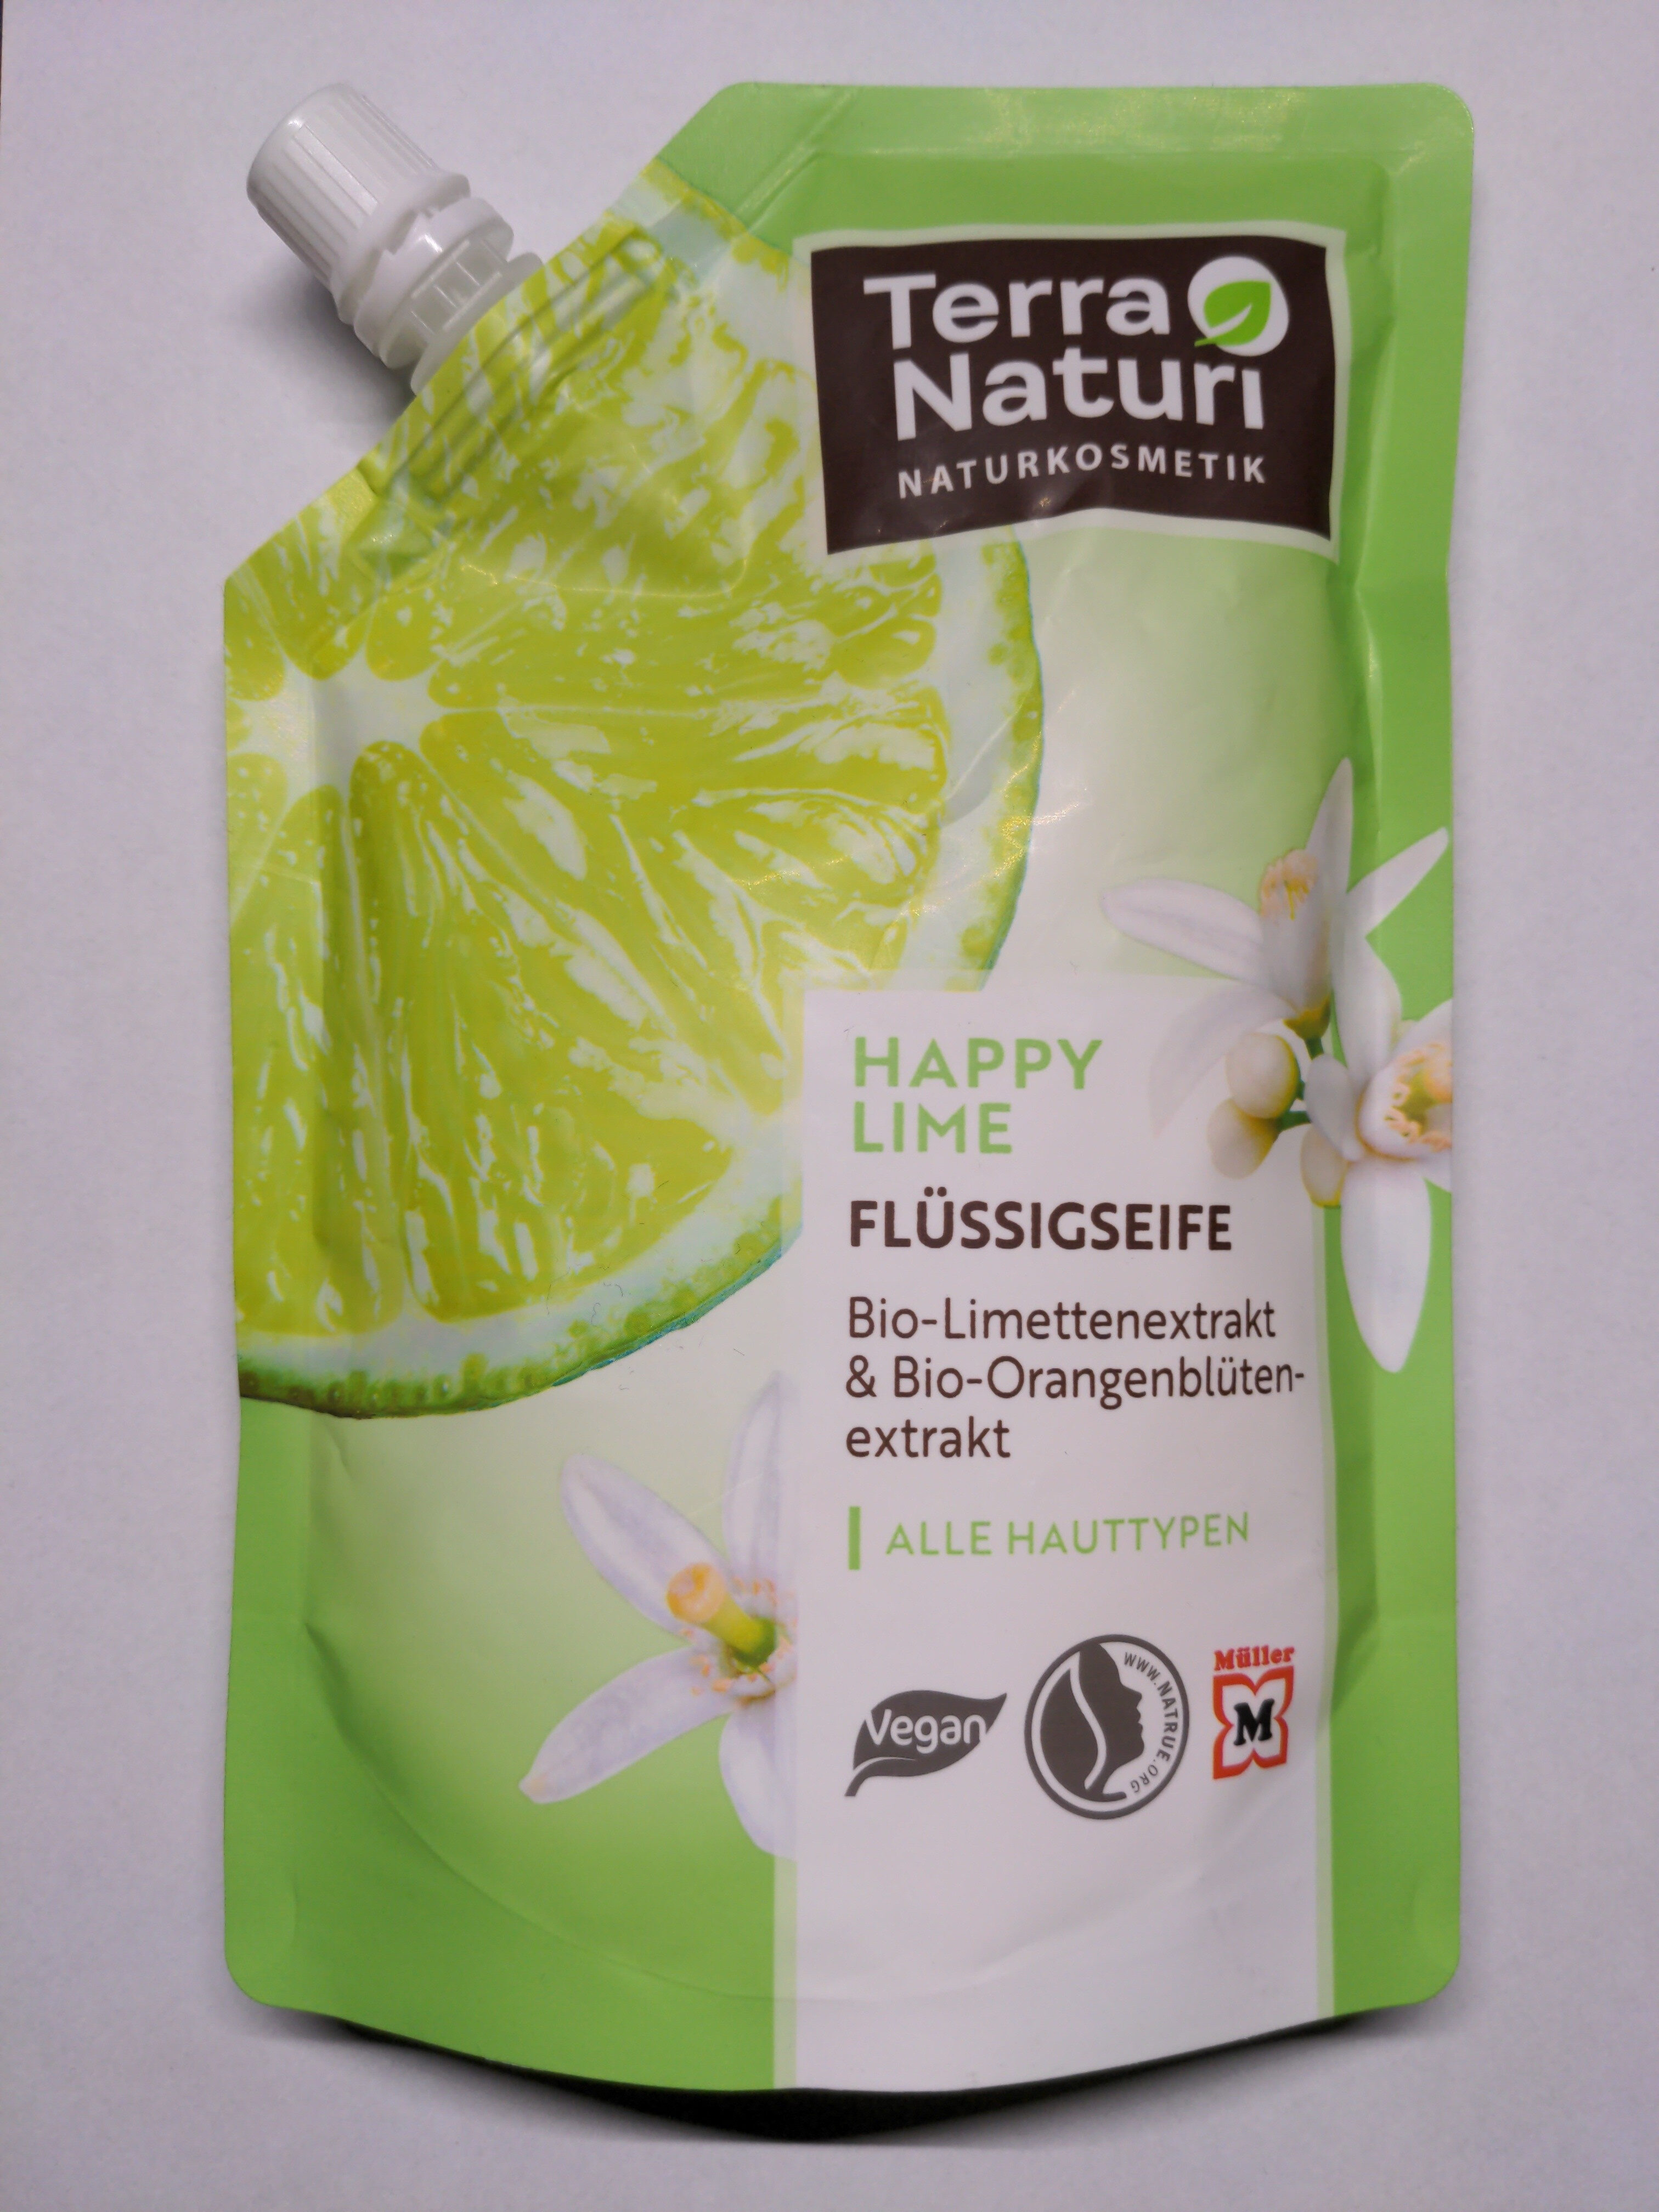 Terra Natuti Happy Lime Flüssigseife - Product - de